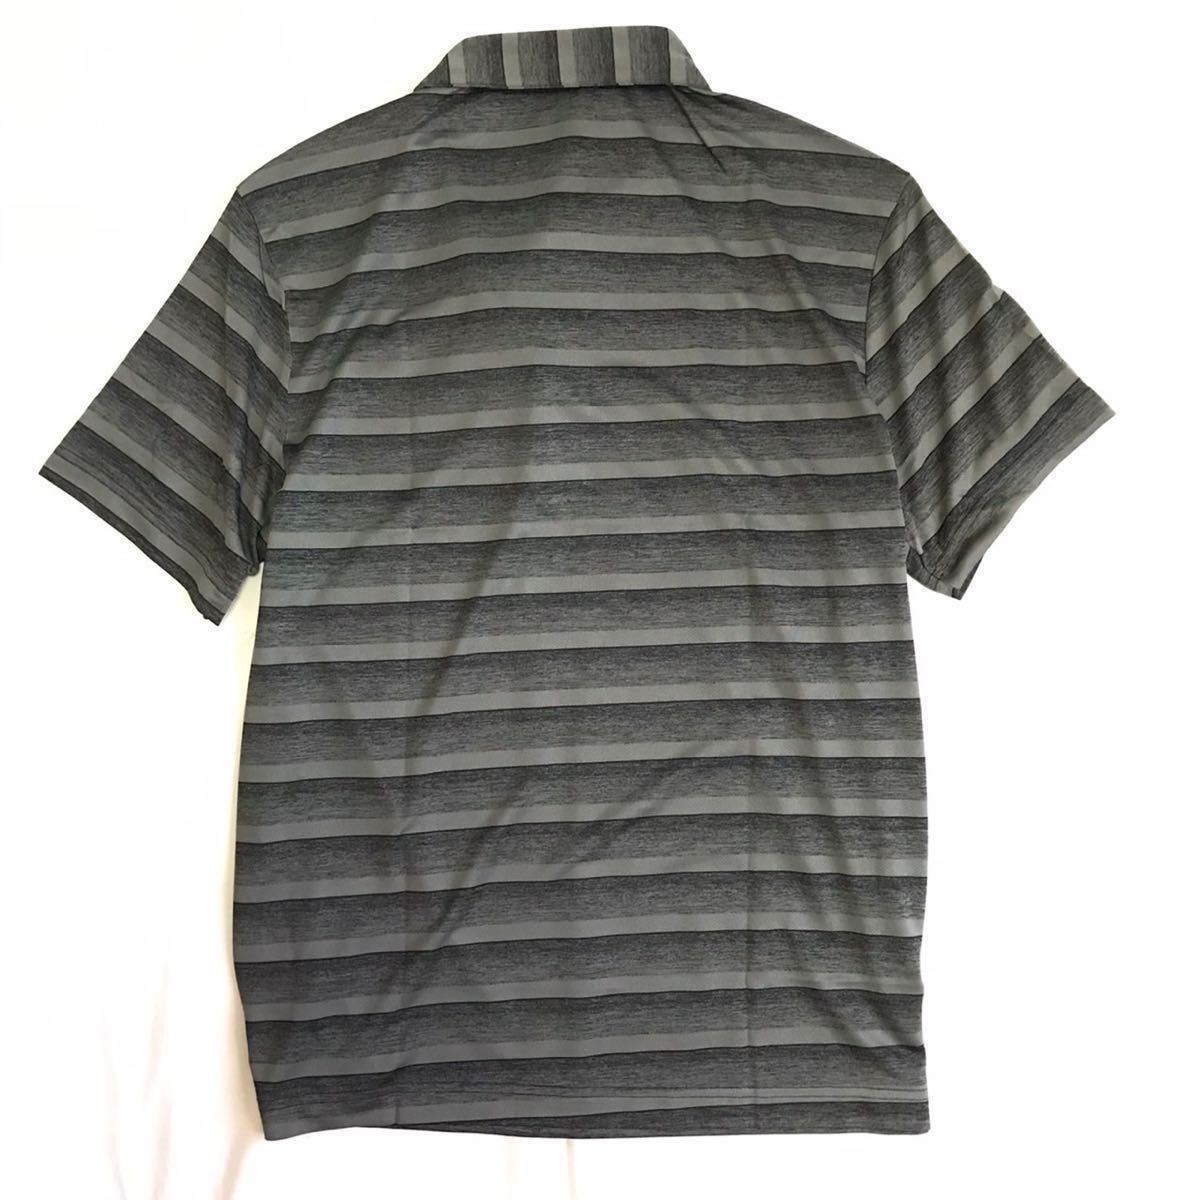 *H339 новый товар [ мужской L] черный adidas Adidas Golf одежда градация окантовка рубашка с коротким рукавом общий рисунок принт .... ткань 